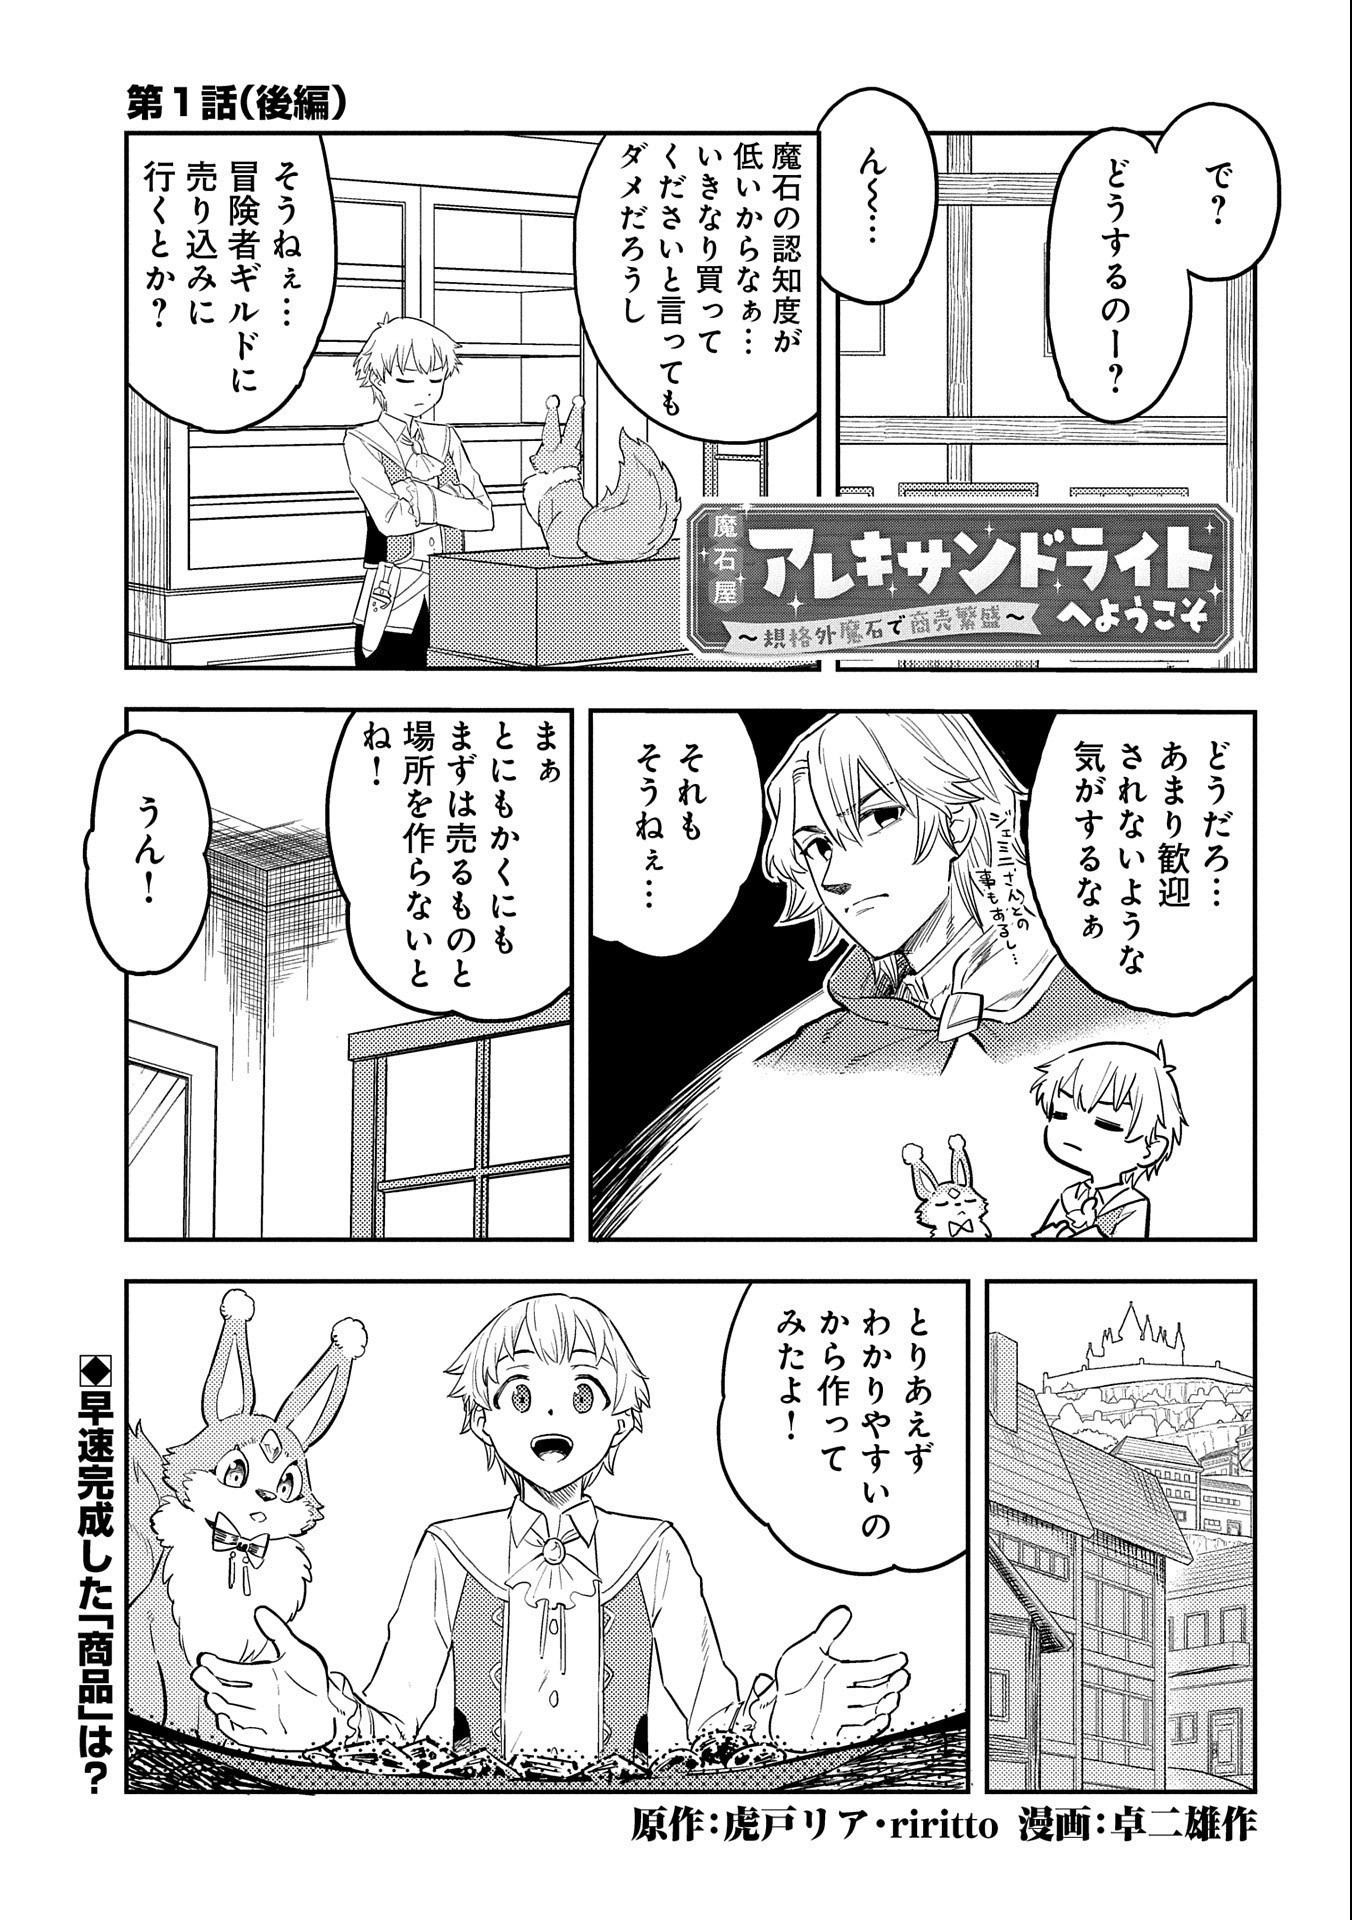 Maishiya Alexandrite e Youkoso: Kikakugai no Tokkyuu Housekishi to Mofumofu  Housekijuu no Isekai Hanjouki Manga